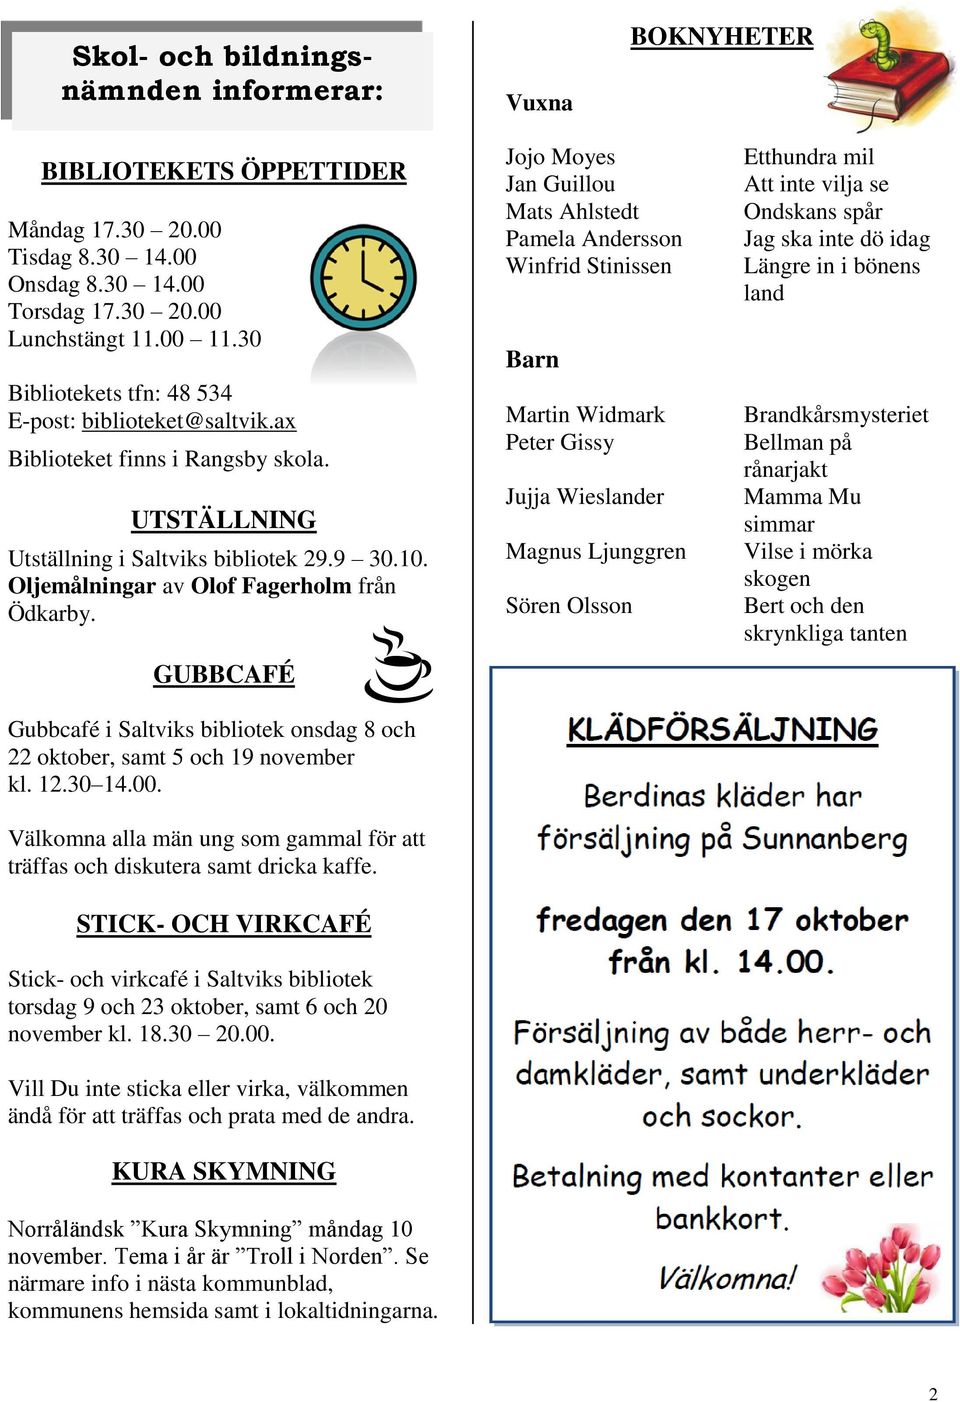 GUBBCAFÉ Gubbcafé i Saltviks bibliotek onsdag 8 och 22 oktober, samt 5 och 19 november kl. 12.30 14.00. Välkomna alla män ung som gammal för att träffas och diskutera samt dricka kaffe.